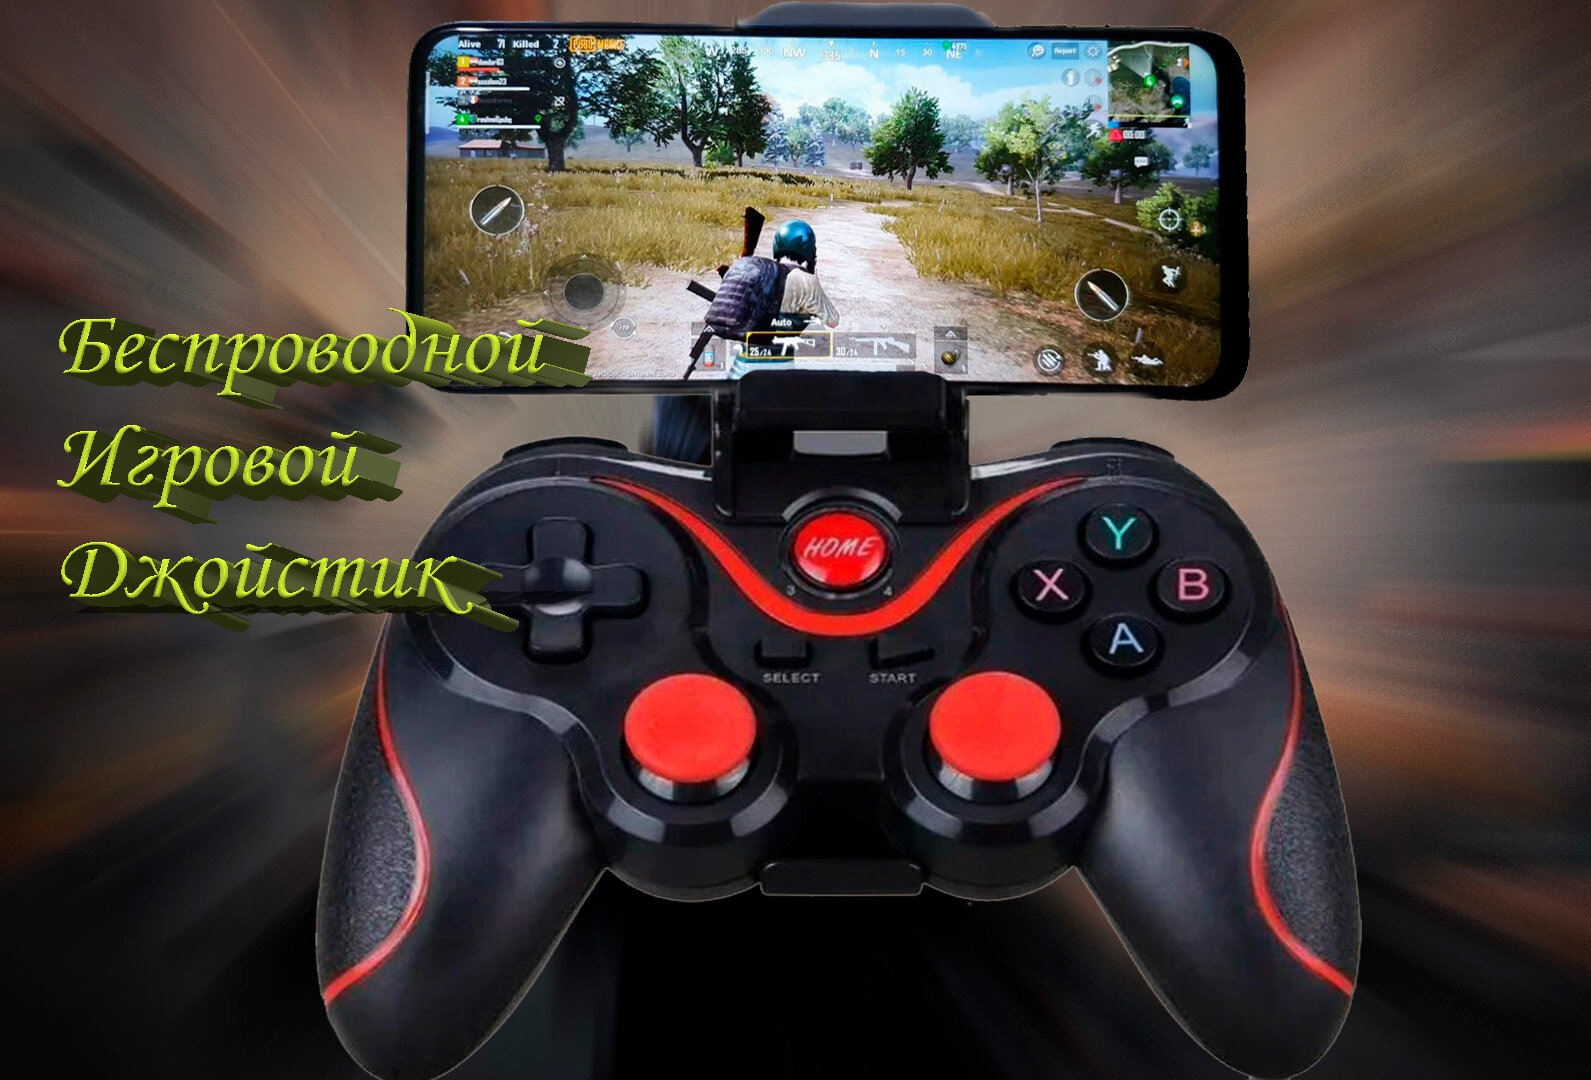 Беспроводной геймпад для Android Gaming контроллер, беспроводной джойстик для ПК, PS3, Windows, IOS, TV